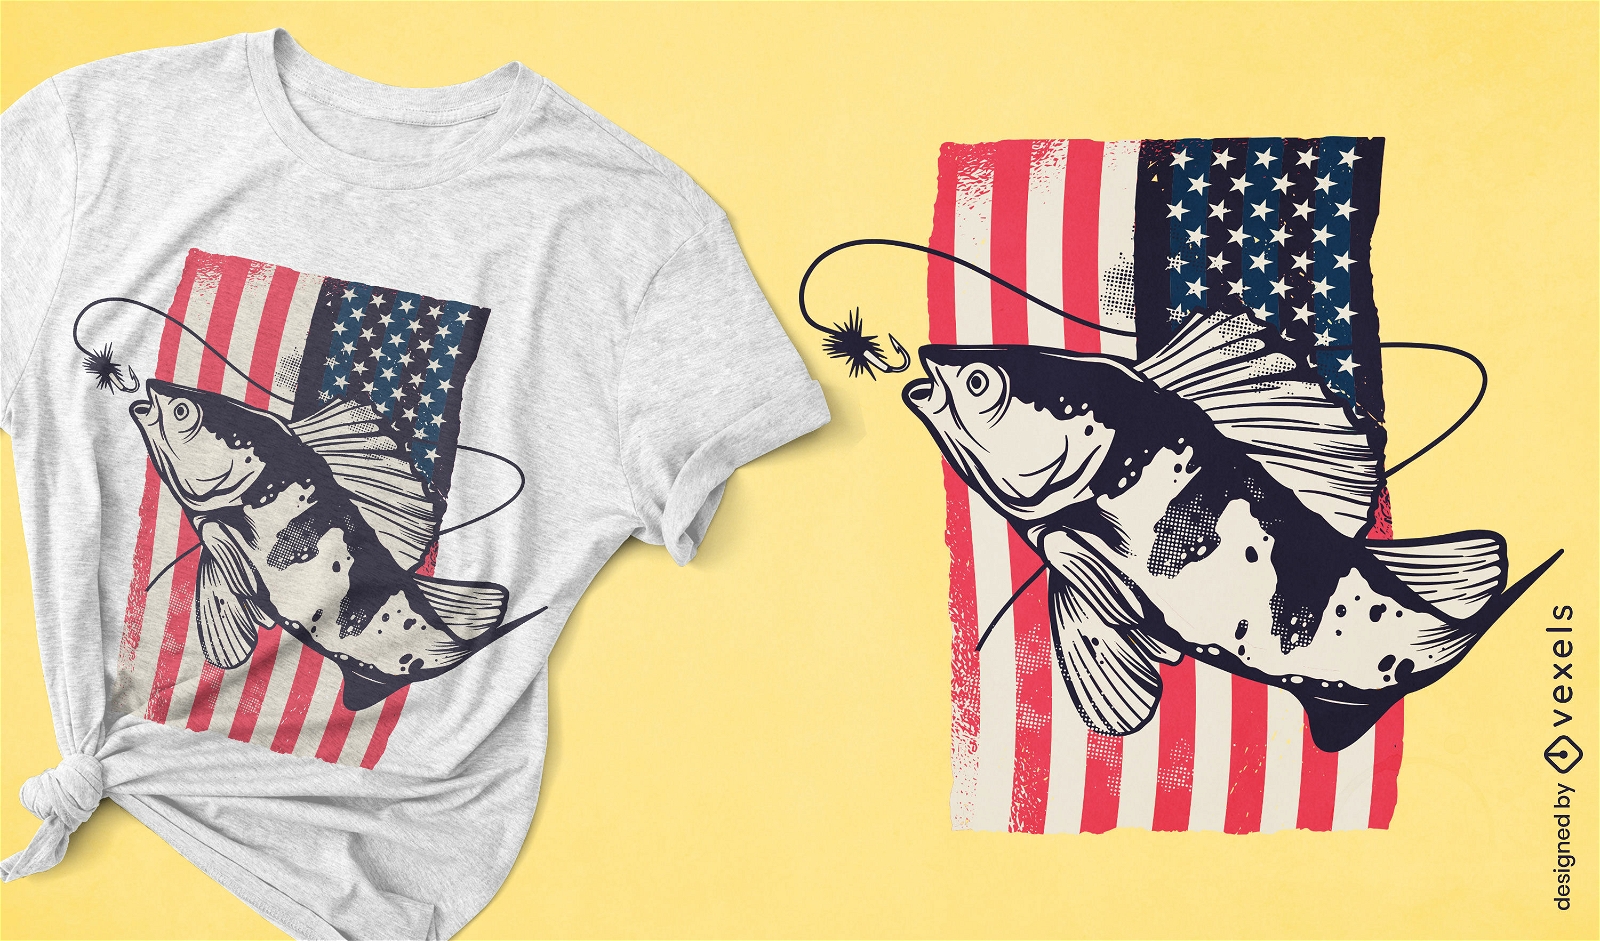 Dise?o de camiseta de pesca con bandera americana.